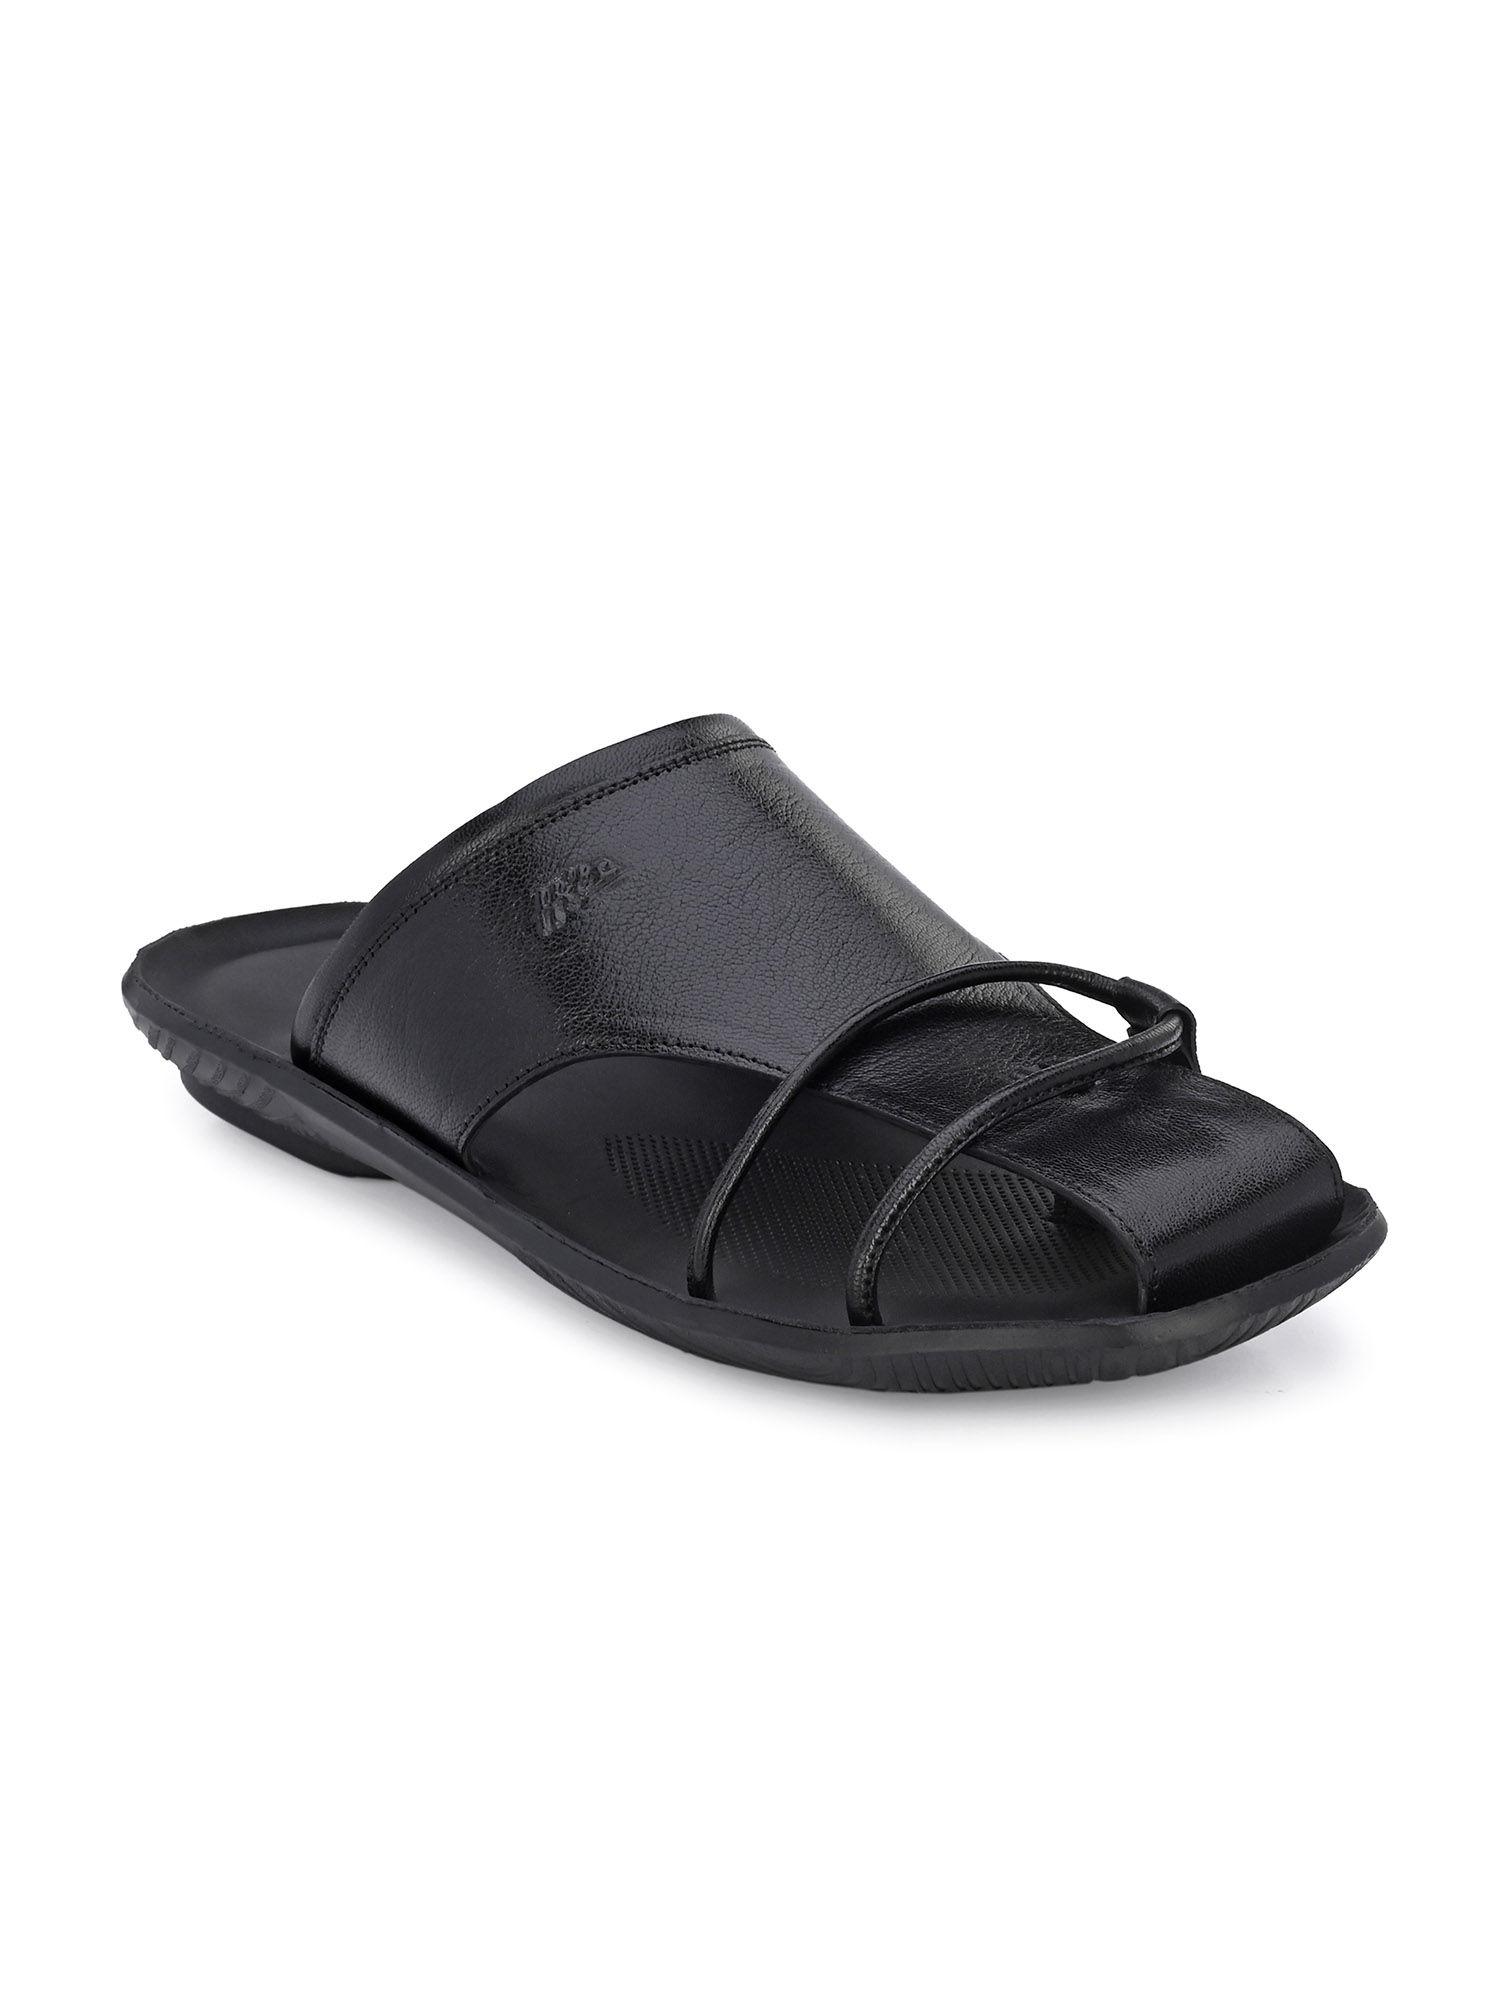 men's black leather indoor outdoor comfort slippers